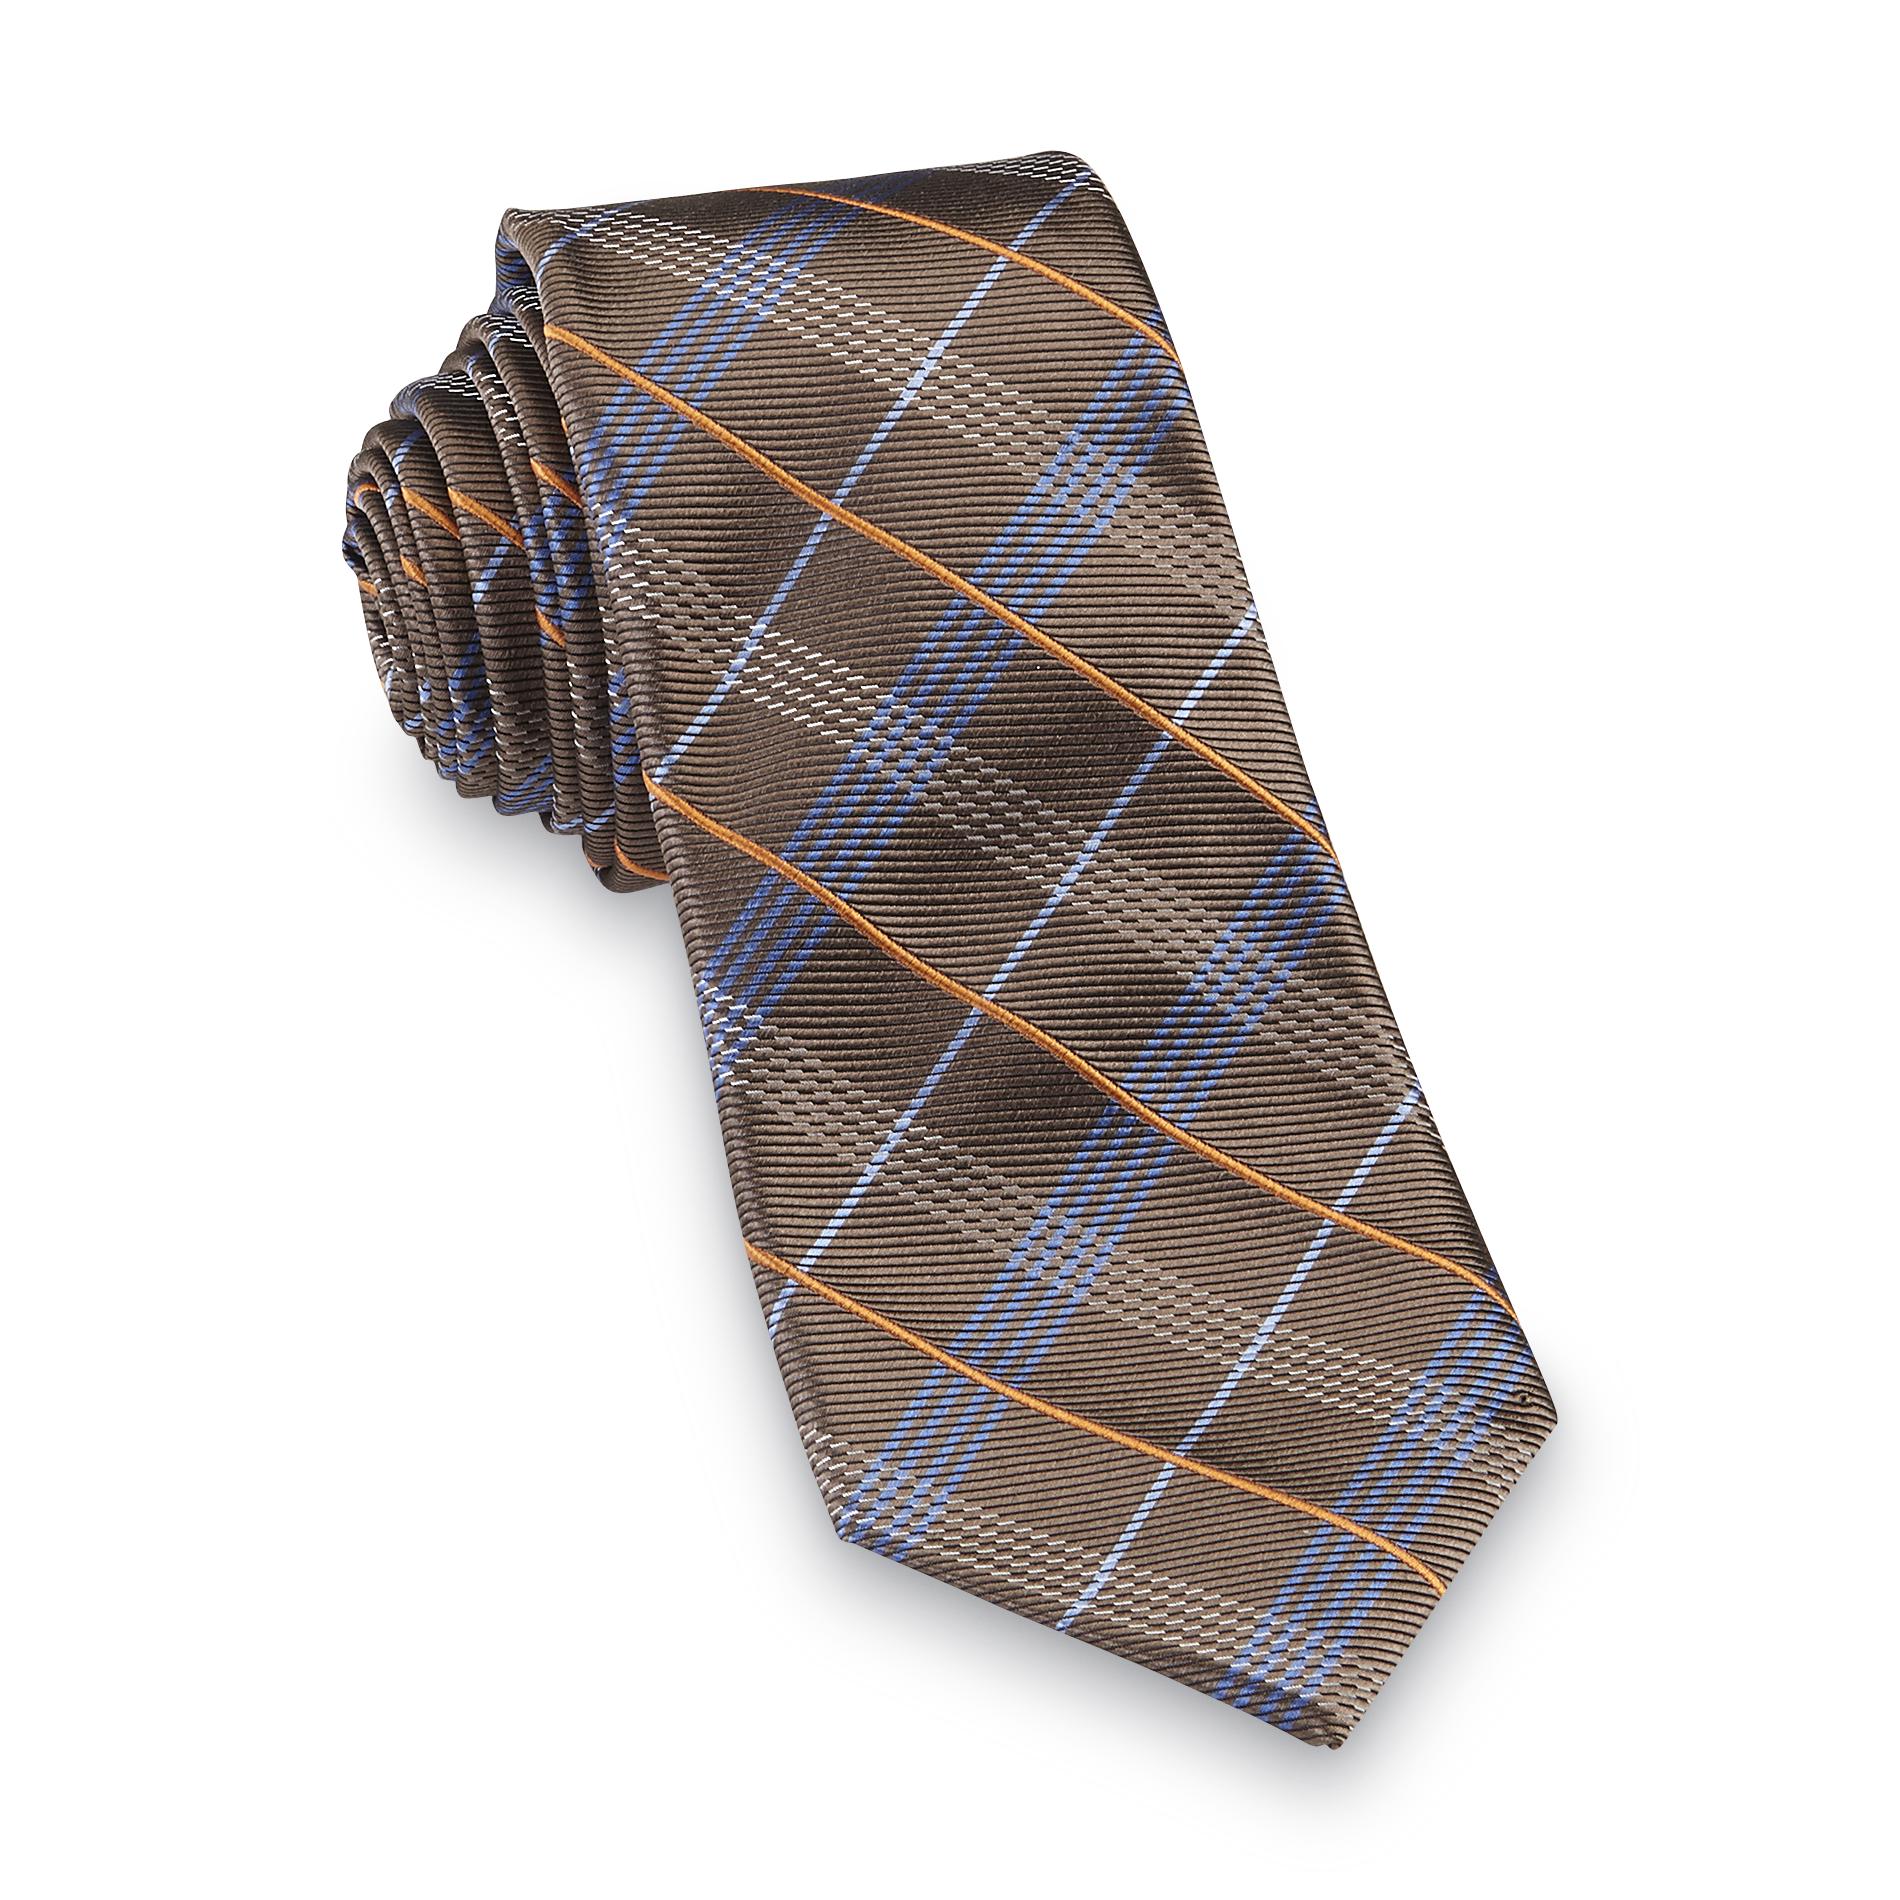 Dockers Men's Necktie - Plaid